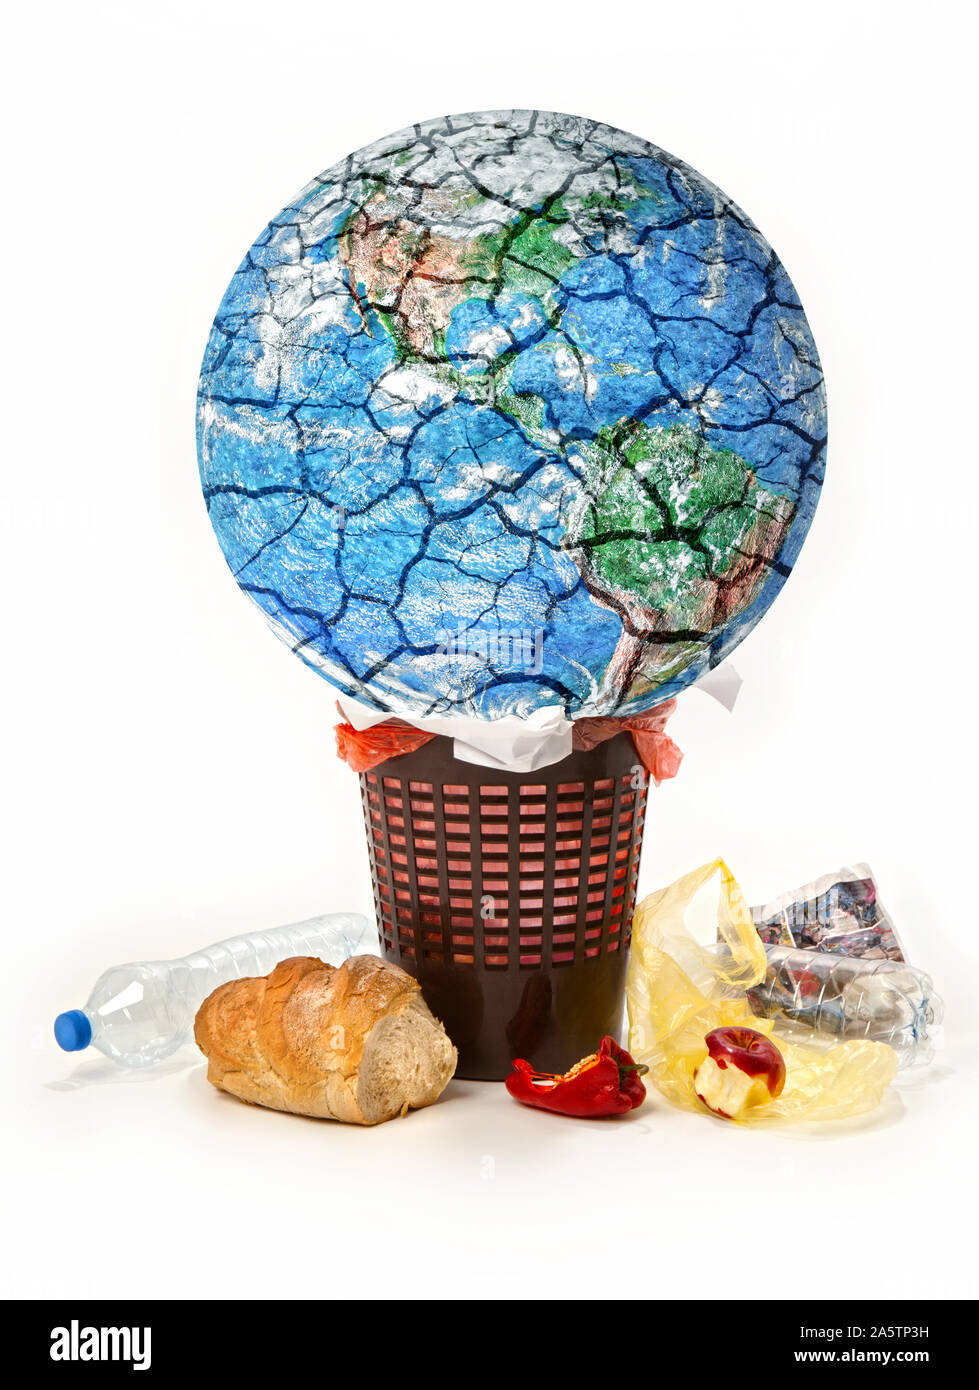 Image conceptuelle de détruire la planète. La planète Terre est jeté dans les ordures, l'alimentation, les déchets jetés,Corbeille, isolé sur un fond blanc. Banque D'Images